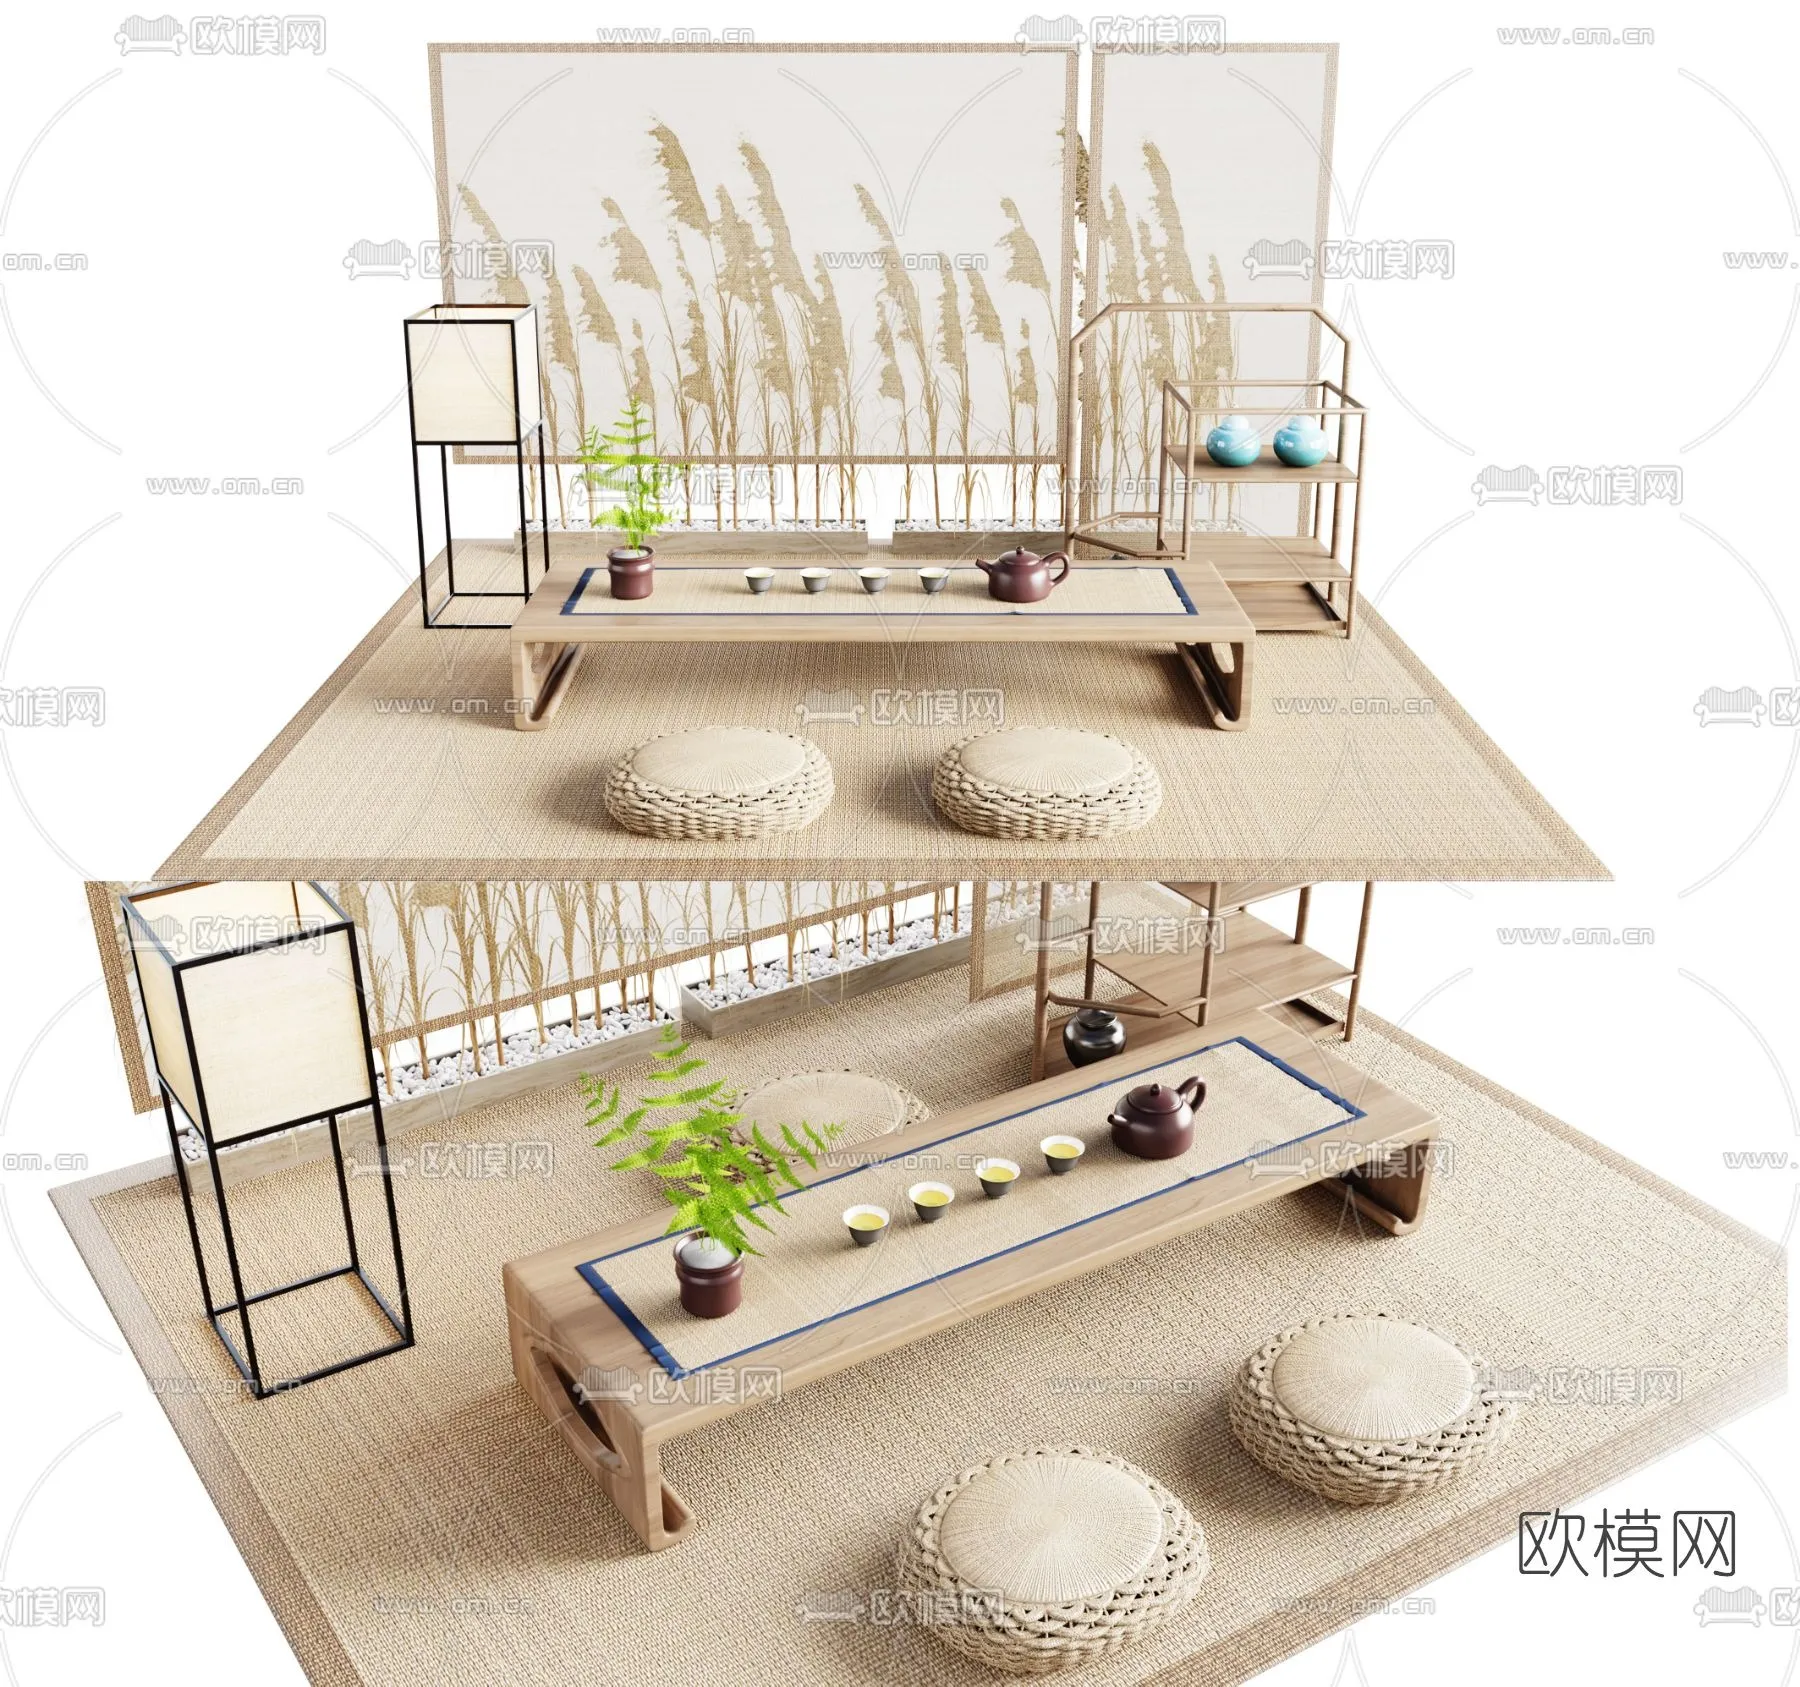 TEA TABLES 3D MODELS – 027 – PRO